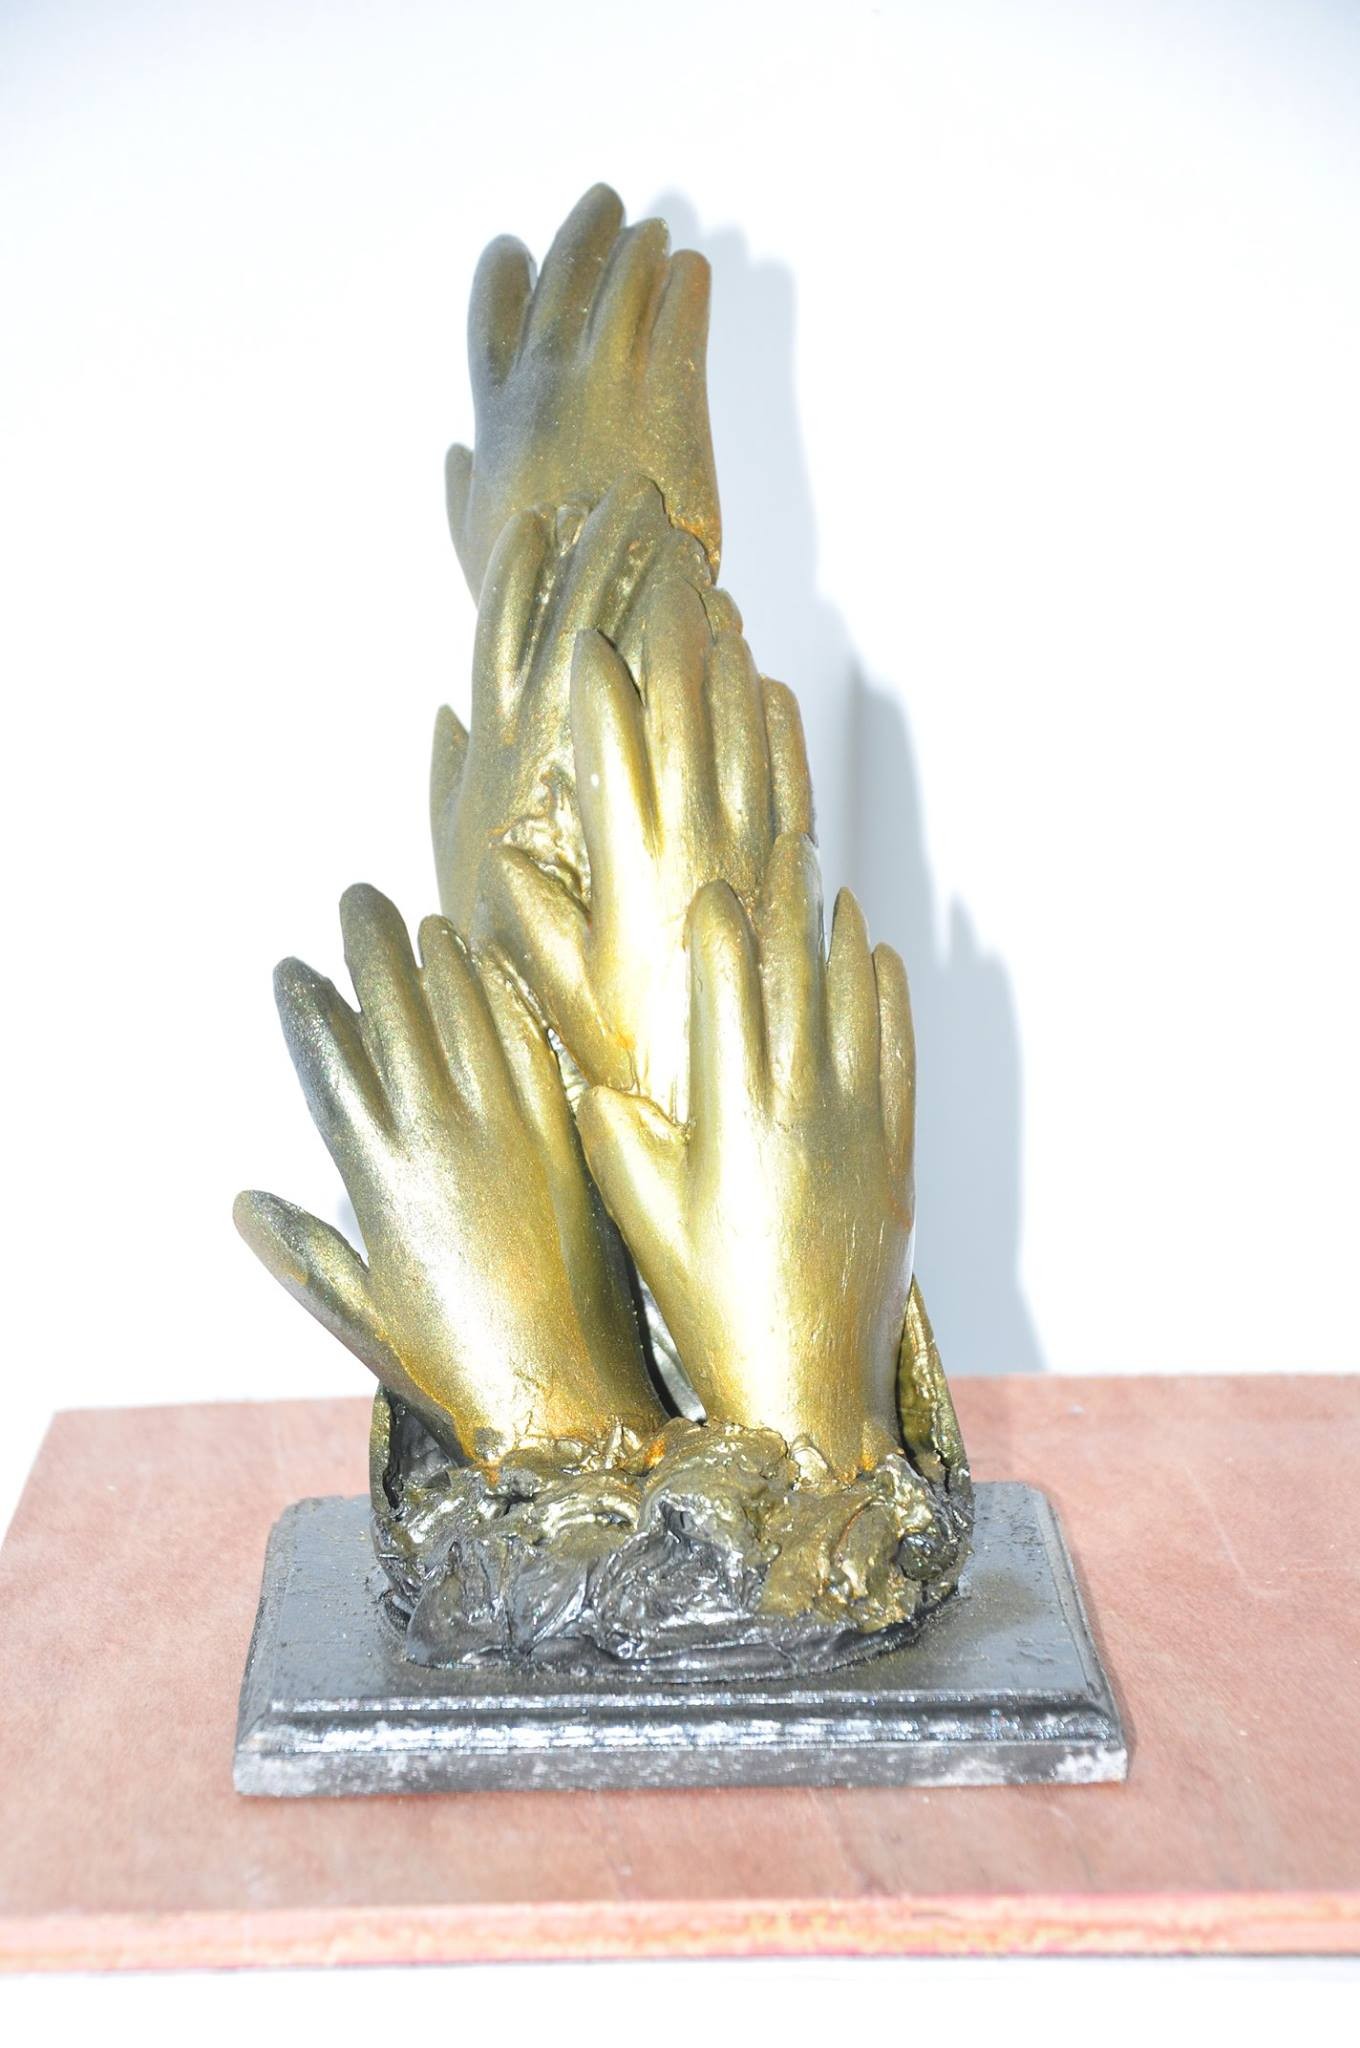 hands by mathavarajah srishanthan